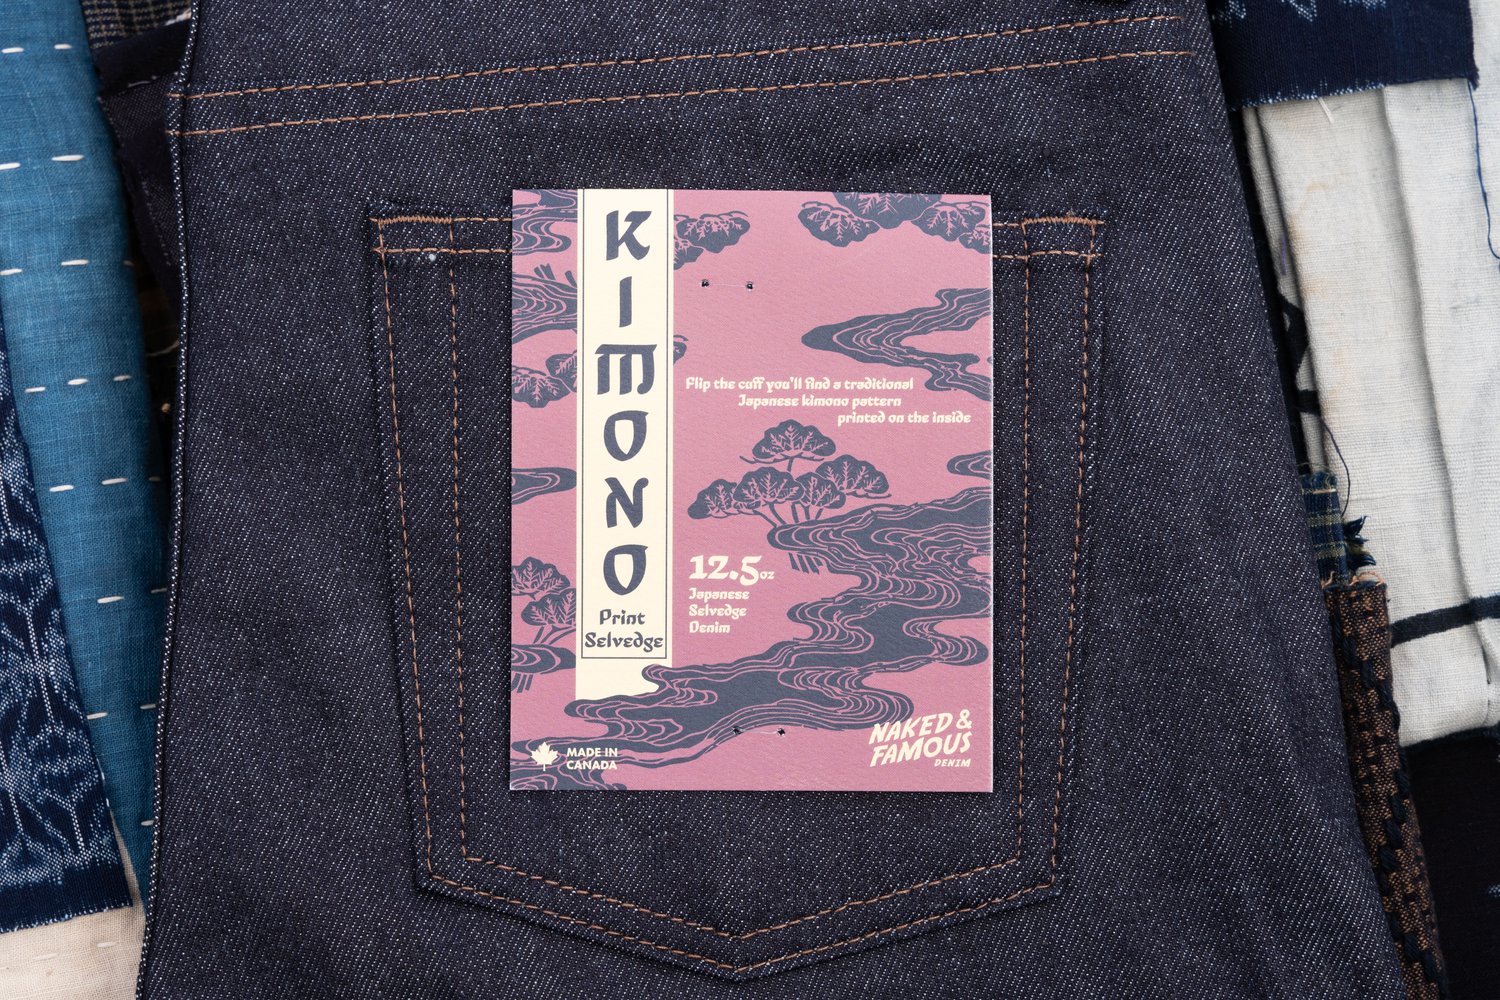 Kimono Print Selvedge - Pocket Flasher